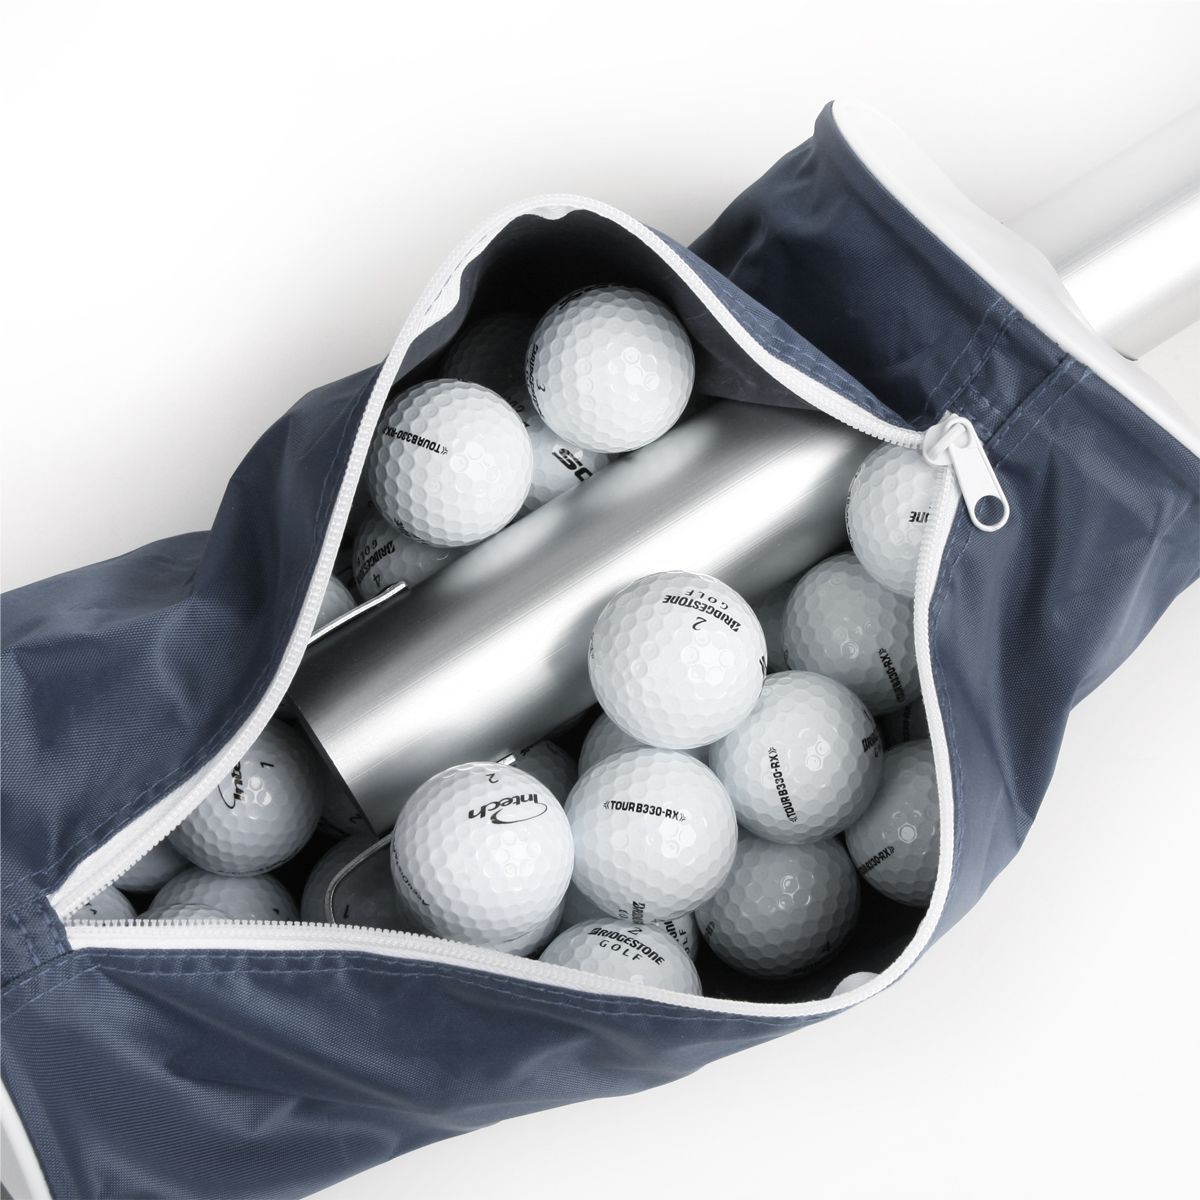 several golf balls inside the unzipped grey Intech Golf Ball Shag Bag